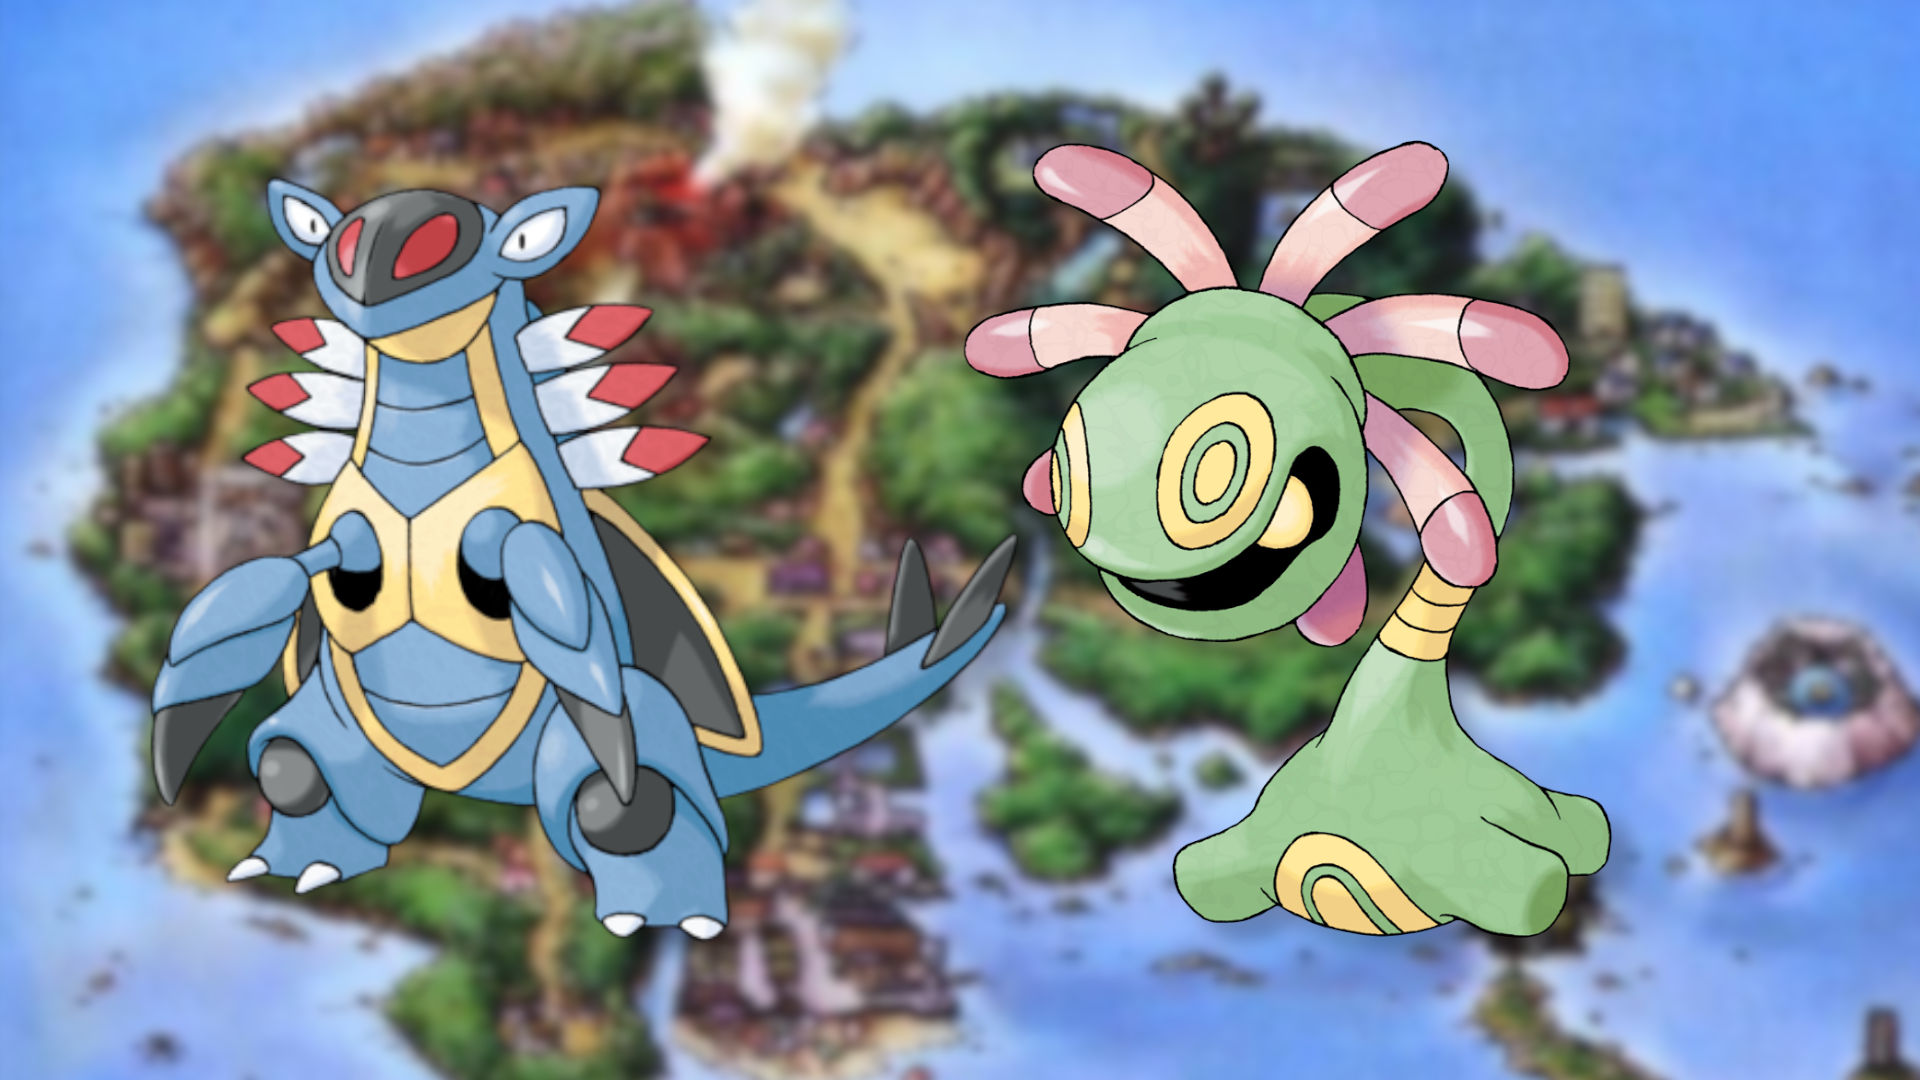 Cradily and Armaldo a gen 3 Pokémon, on a Hoenn background